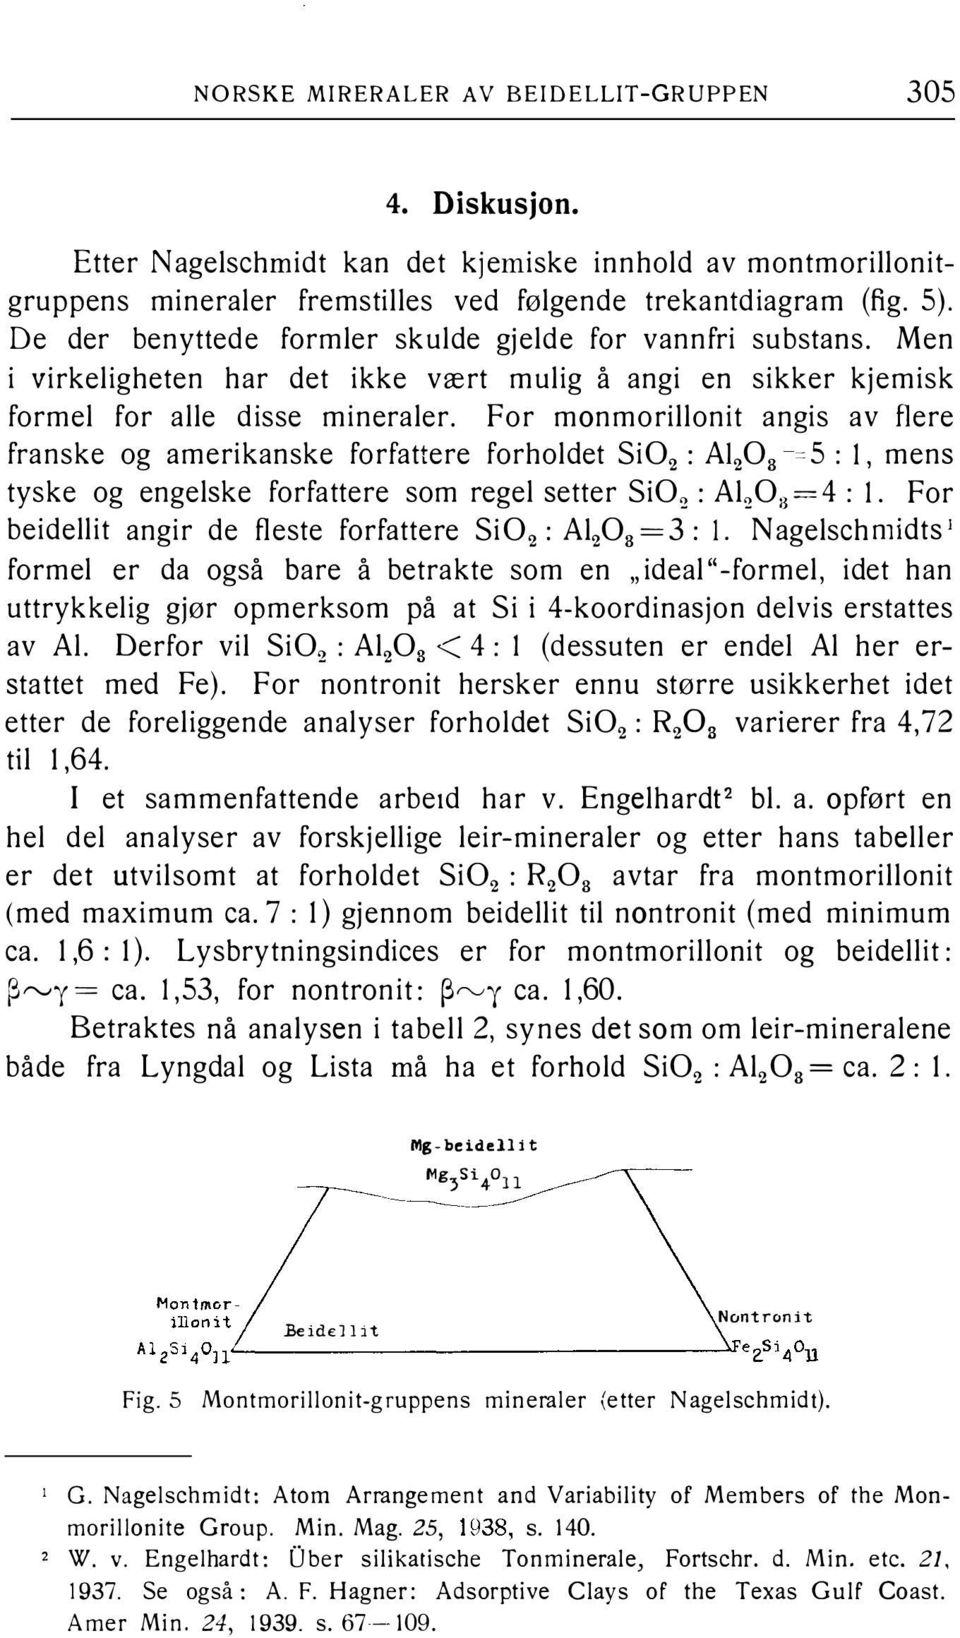 For monmorillonit angis av flere franske og amerikanske forfattere forholdet Si02 : A1203 5: l, mens tyske og engelske forfattere som regel setter Si02 : Al203 =4: l.